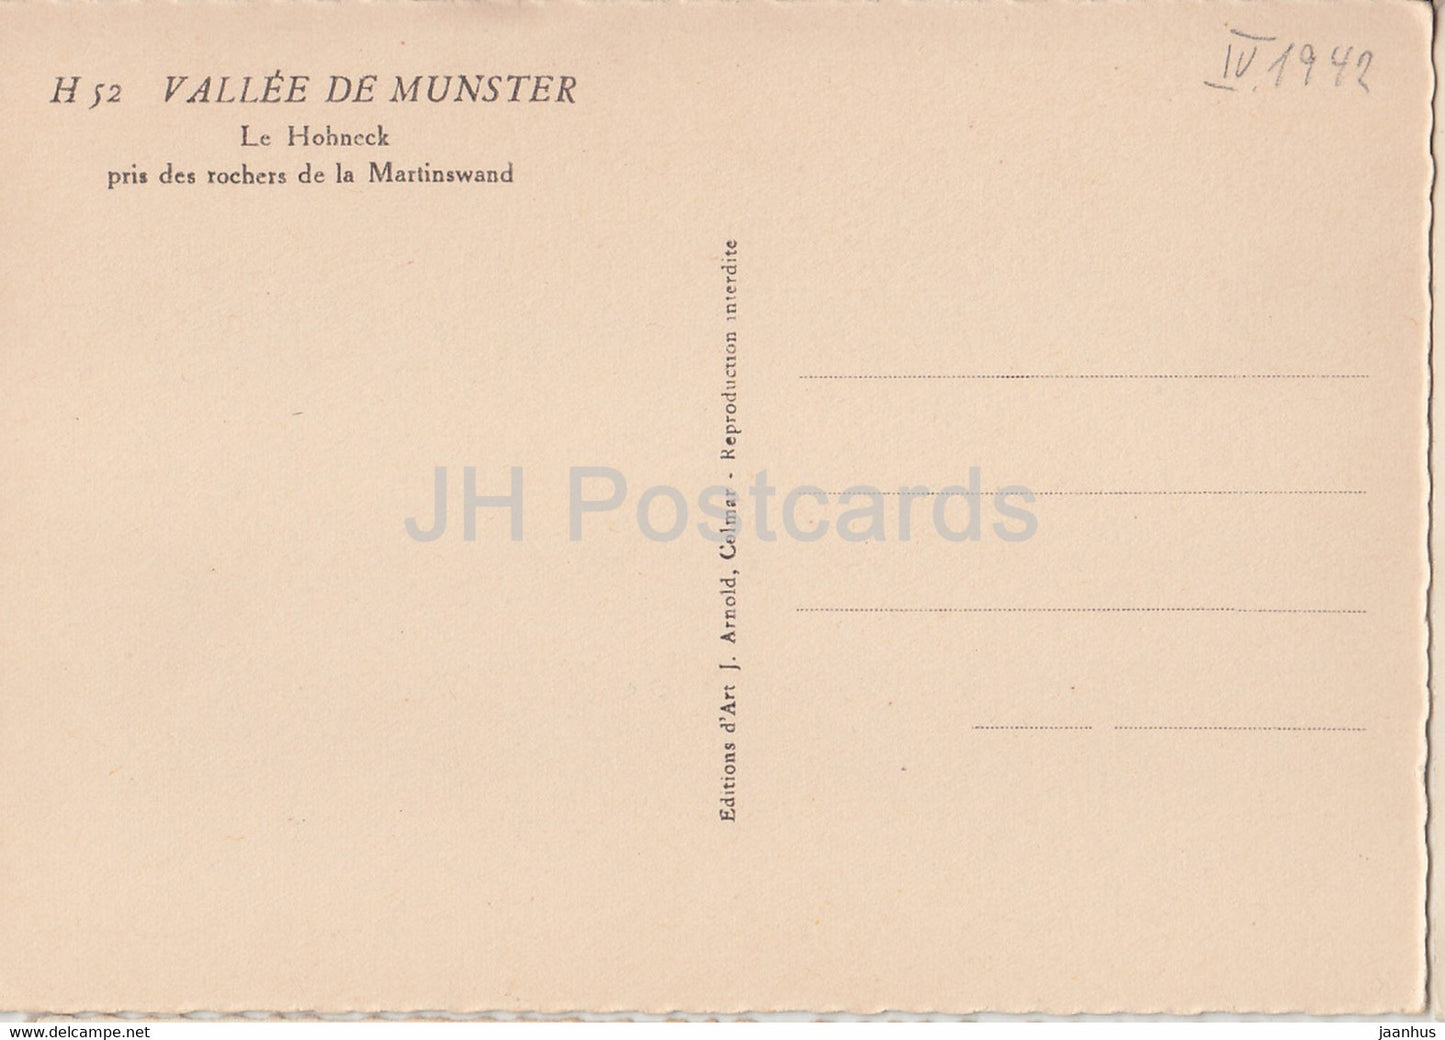 Vallée de Munster - Le Hohneck pris de rochers de la Martinswand - carte postale ancienne - 1942 - France - inutilisé